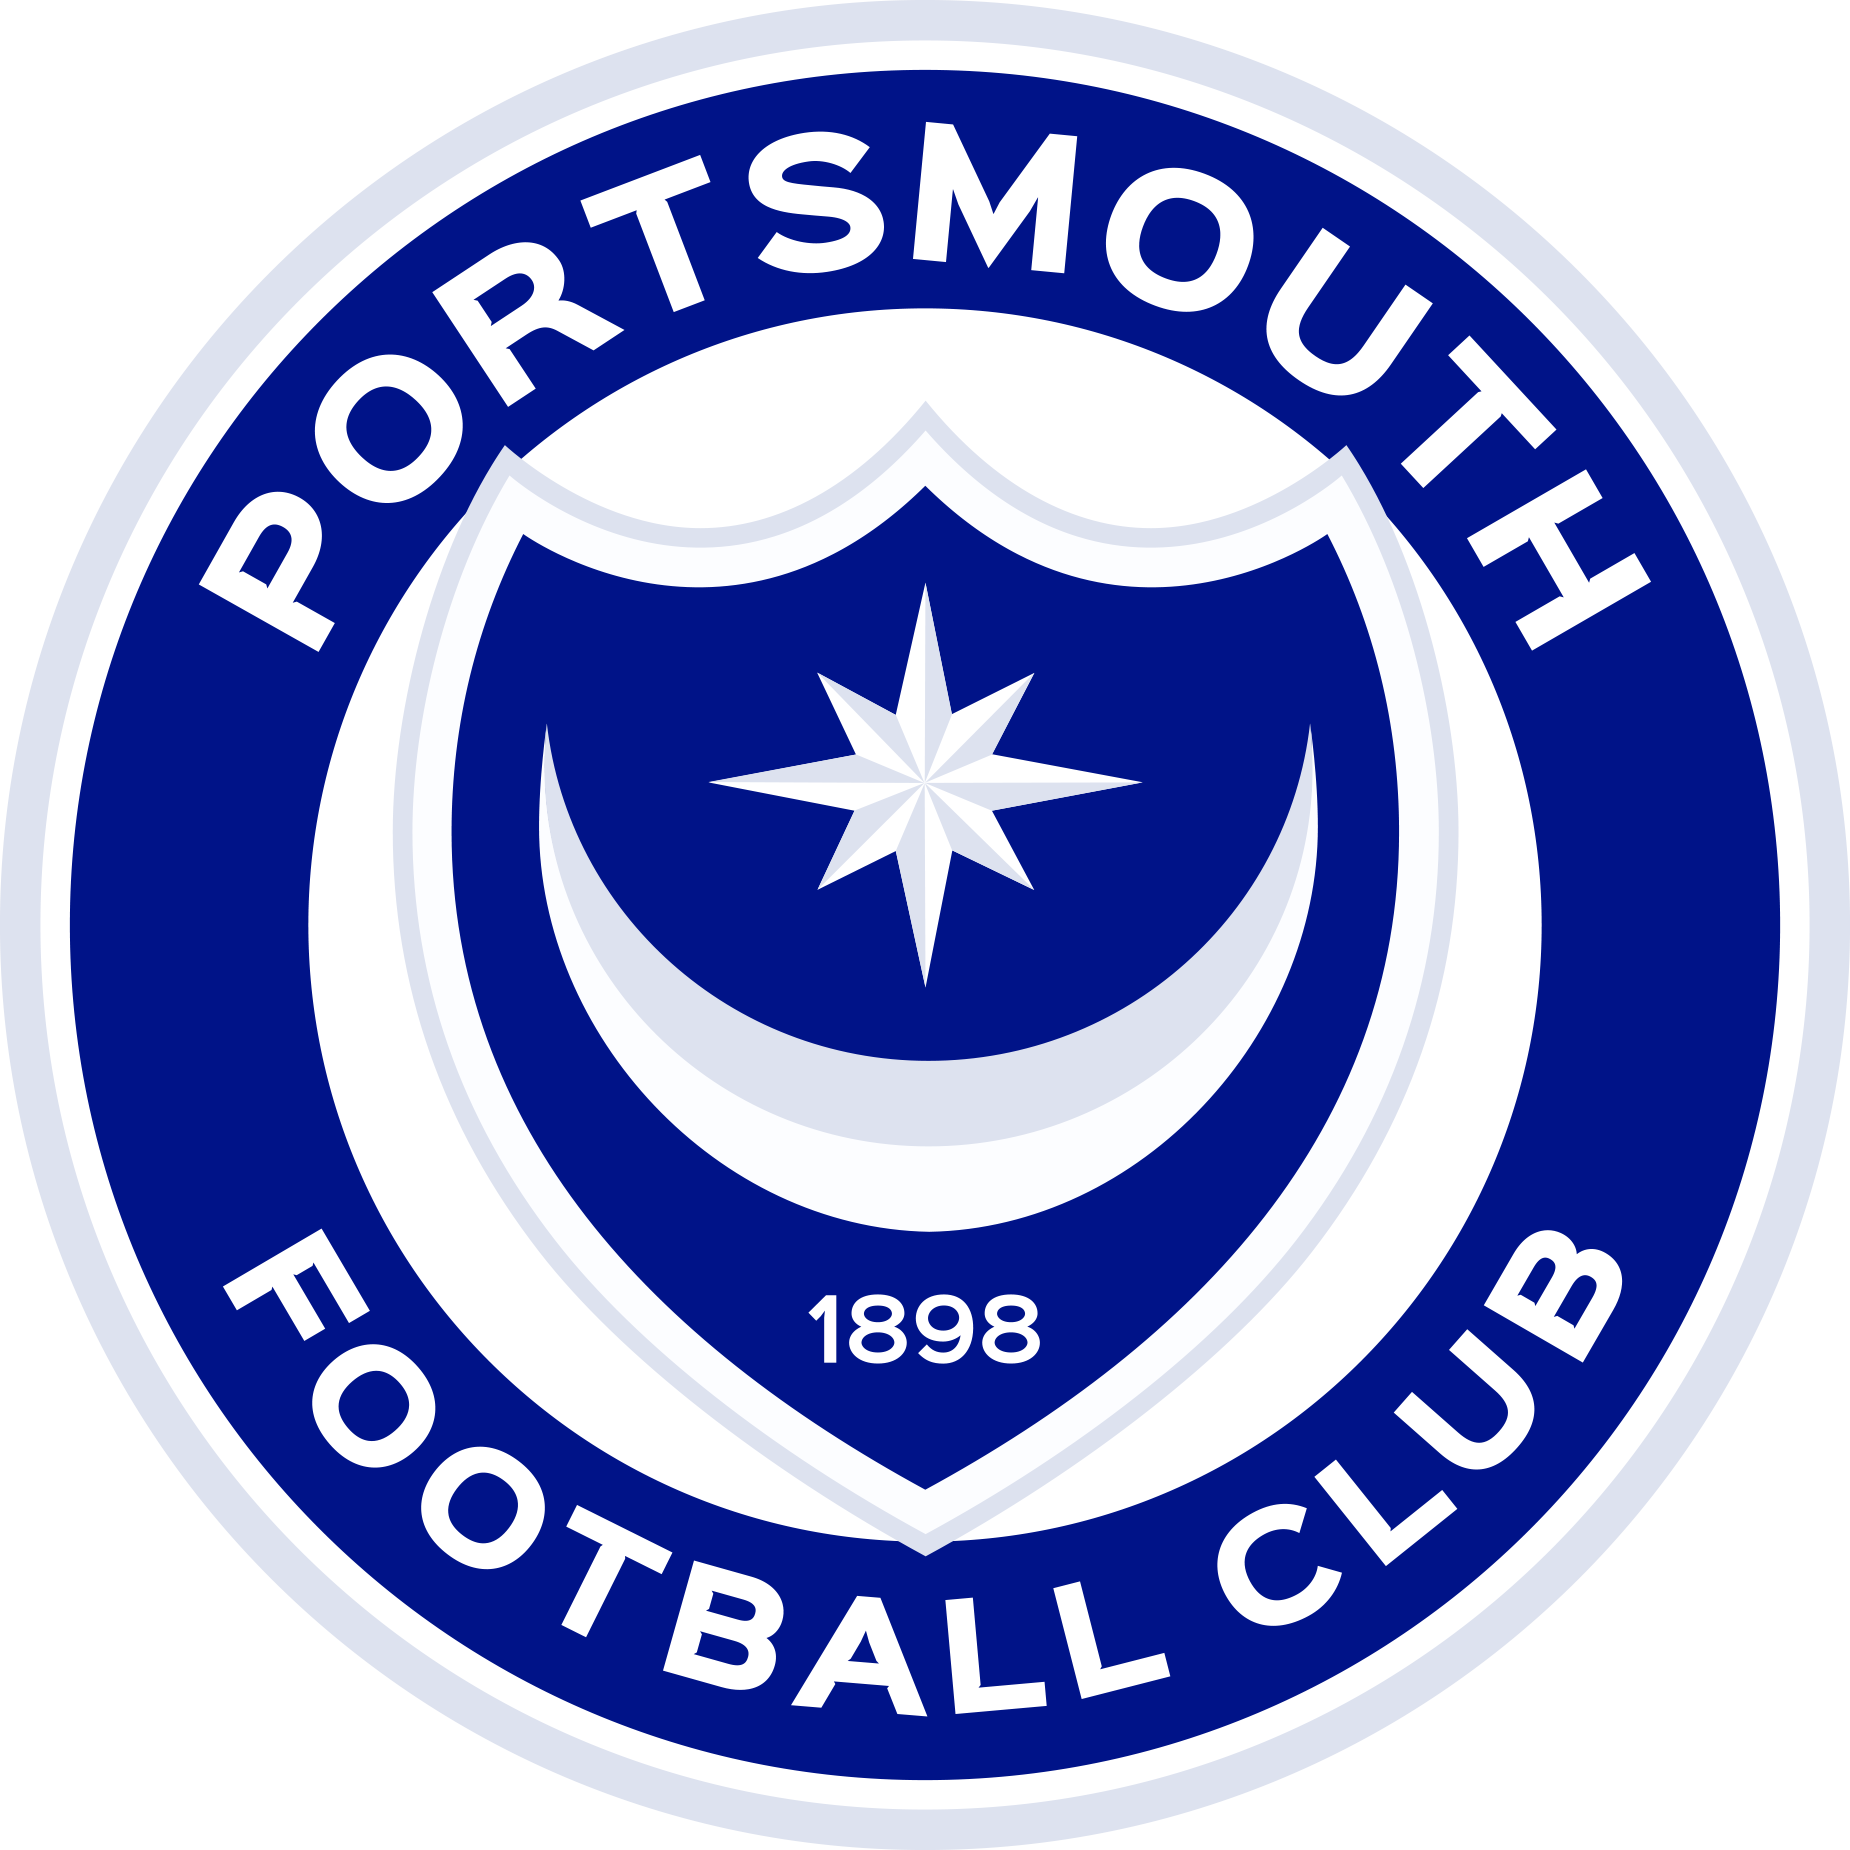 Portsmouth Football Club logo